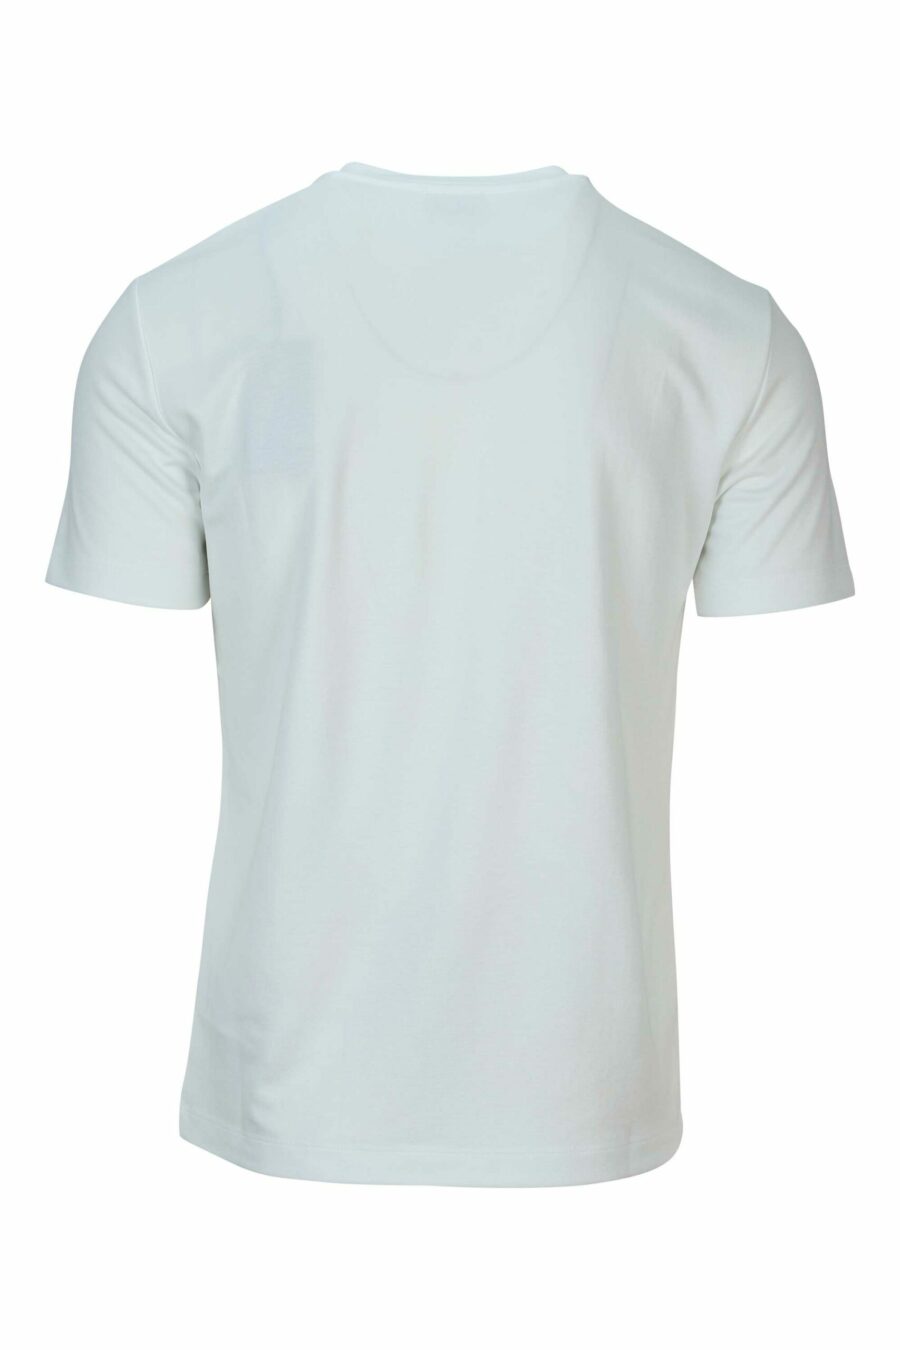 T-shirt branca de tamanho grande com o mini-logotipo "lux identity" branco sobre placa preta - 8058947508495 1 à escala